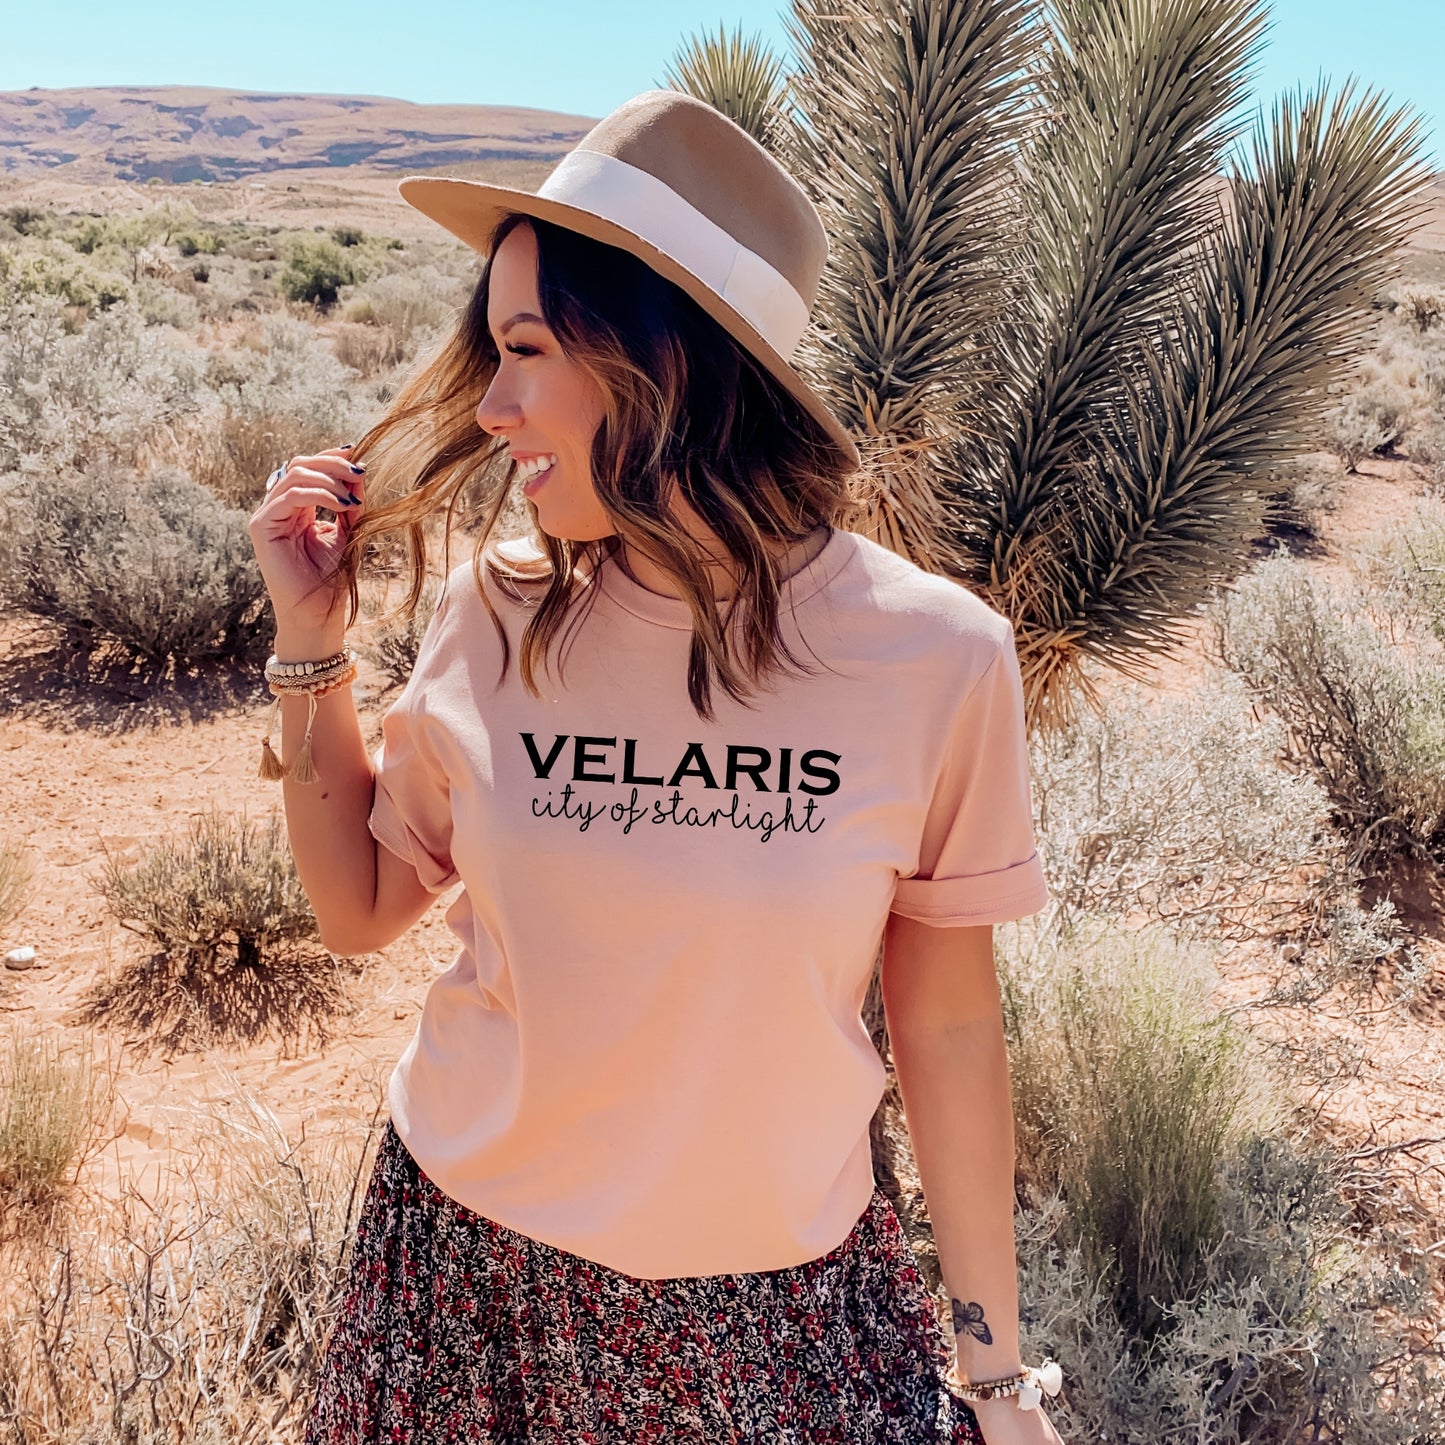 Velaris T-Shirt | Sarah J Maas | Fictional Locations - Ink and Stories